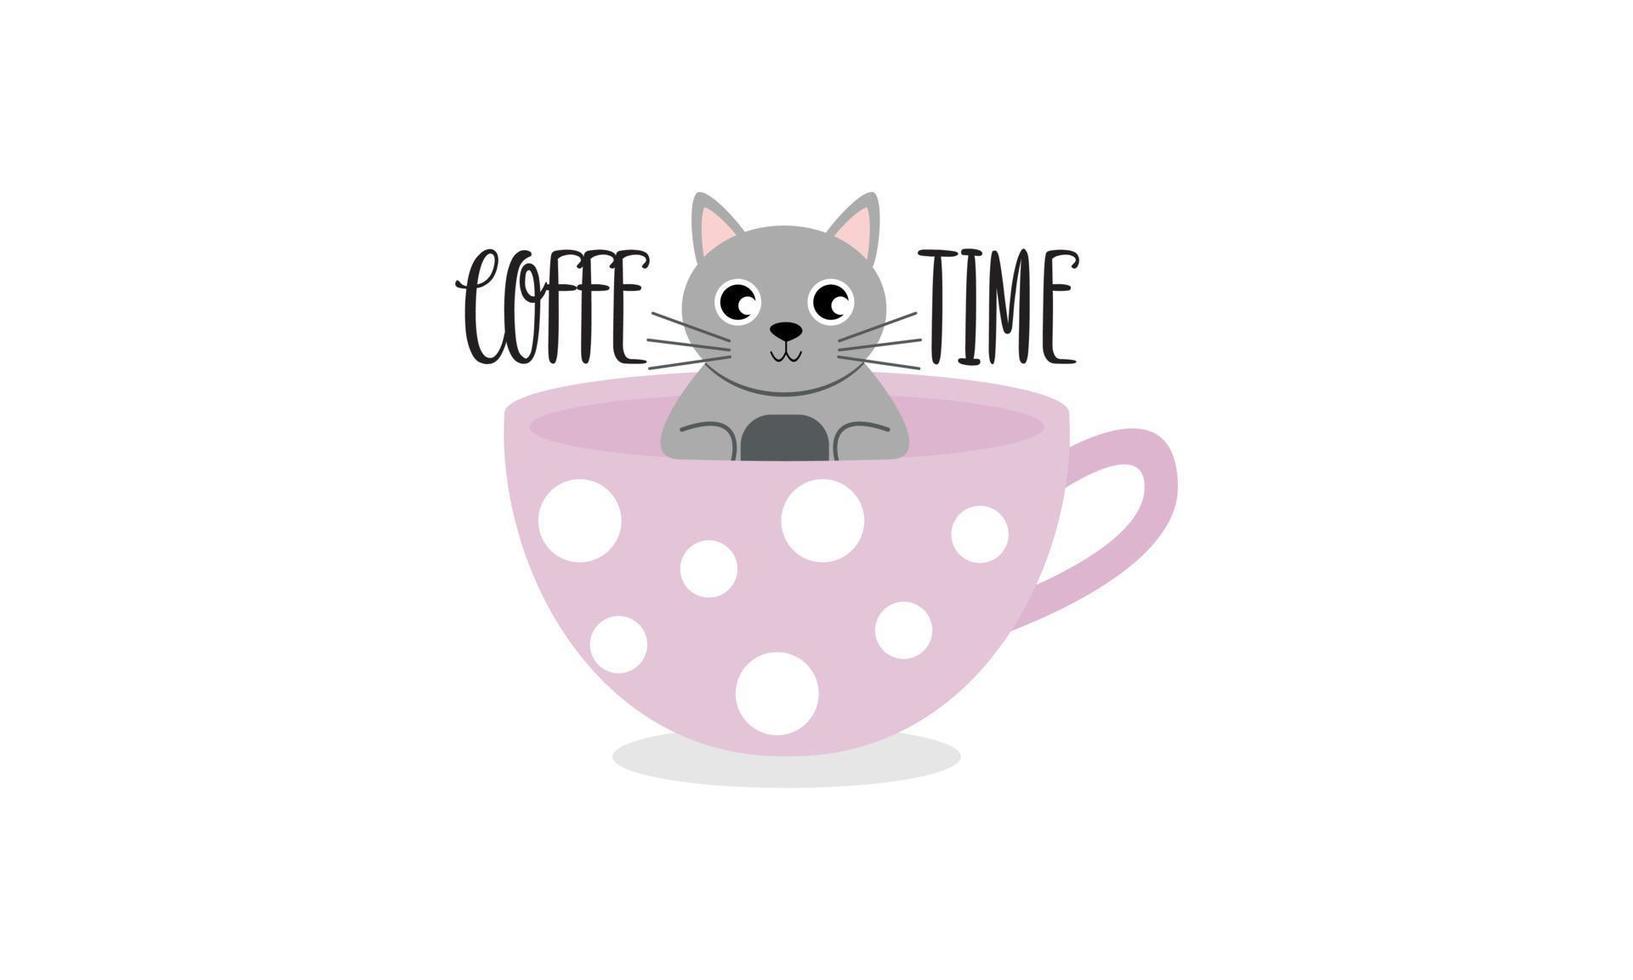 katten en theekopjes een kopje thee logo vector